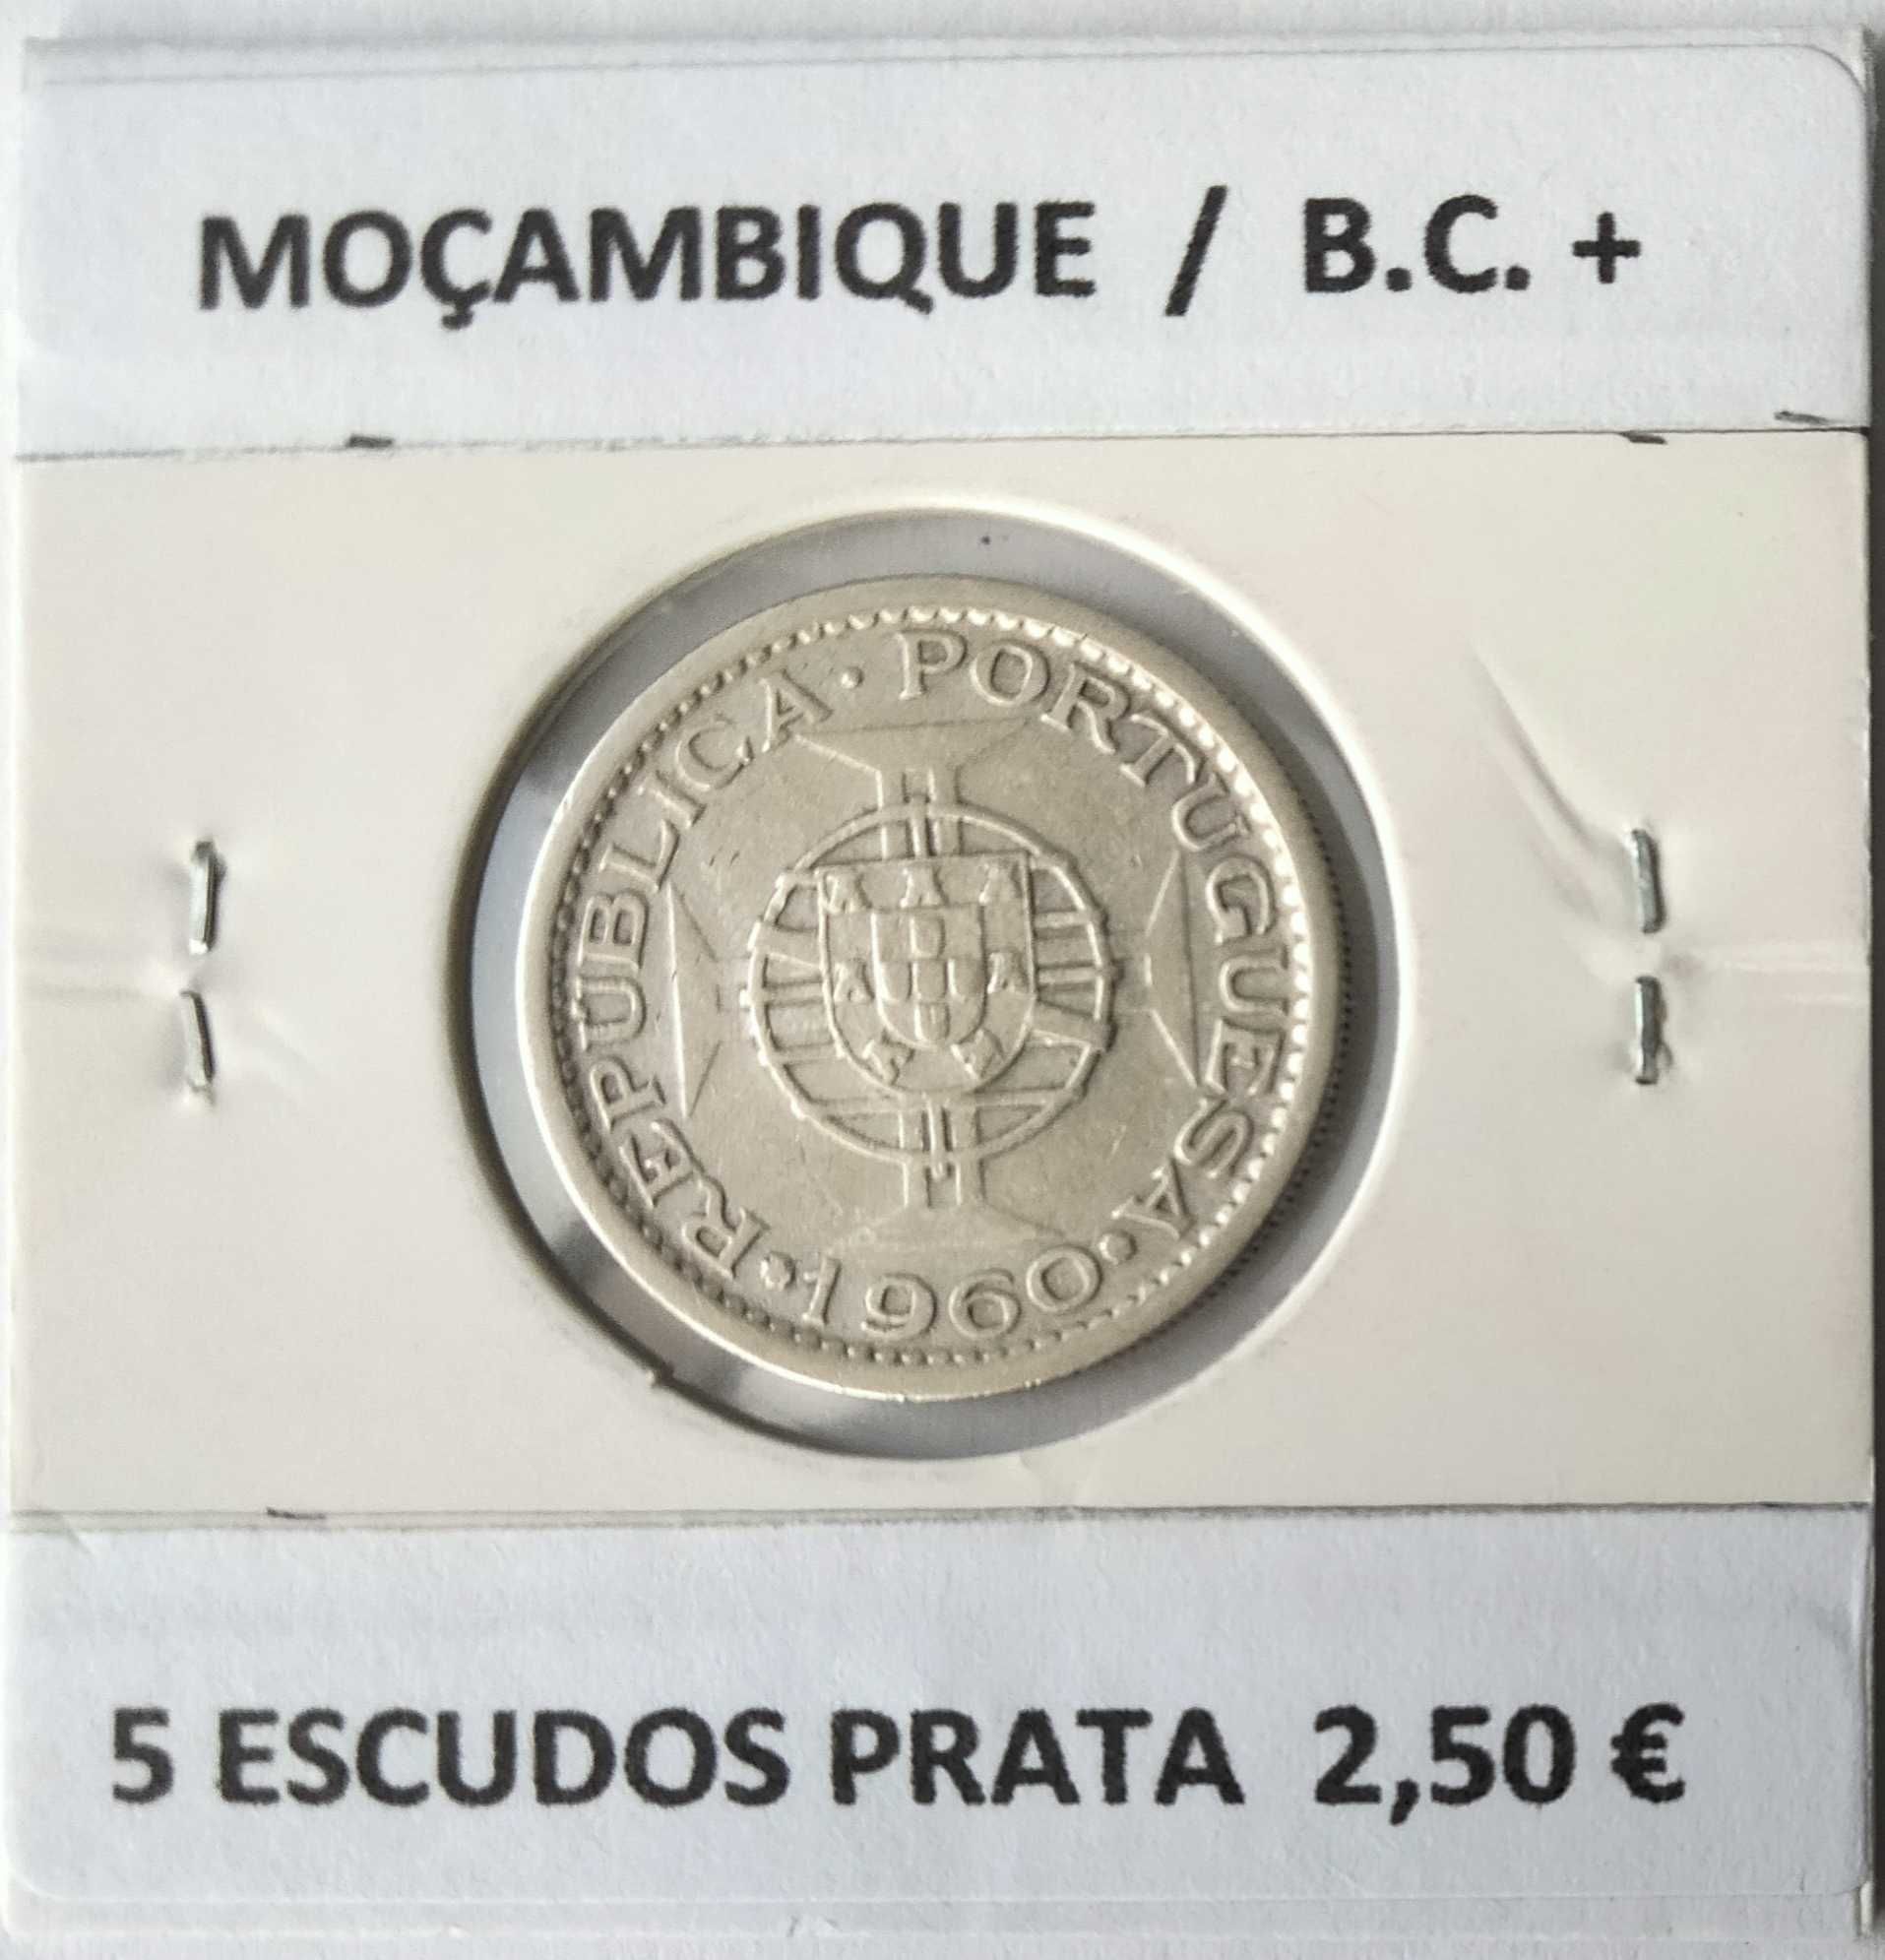 Moedas Portuguesas de 5 e 2,50 Escudos da Ex Colónia de Moçambique